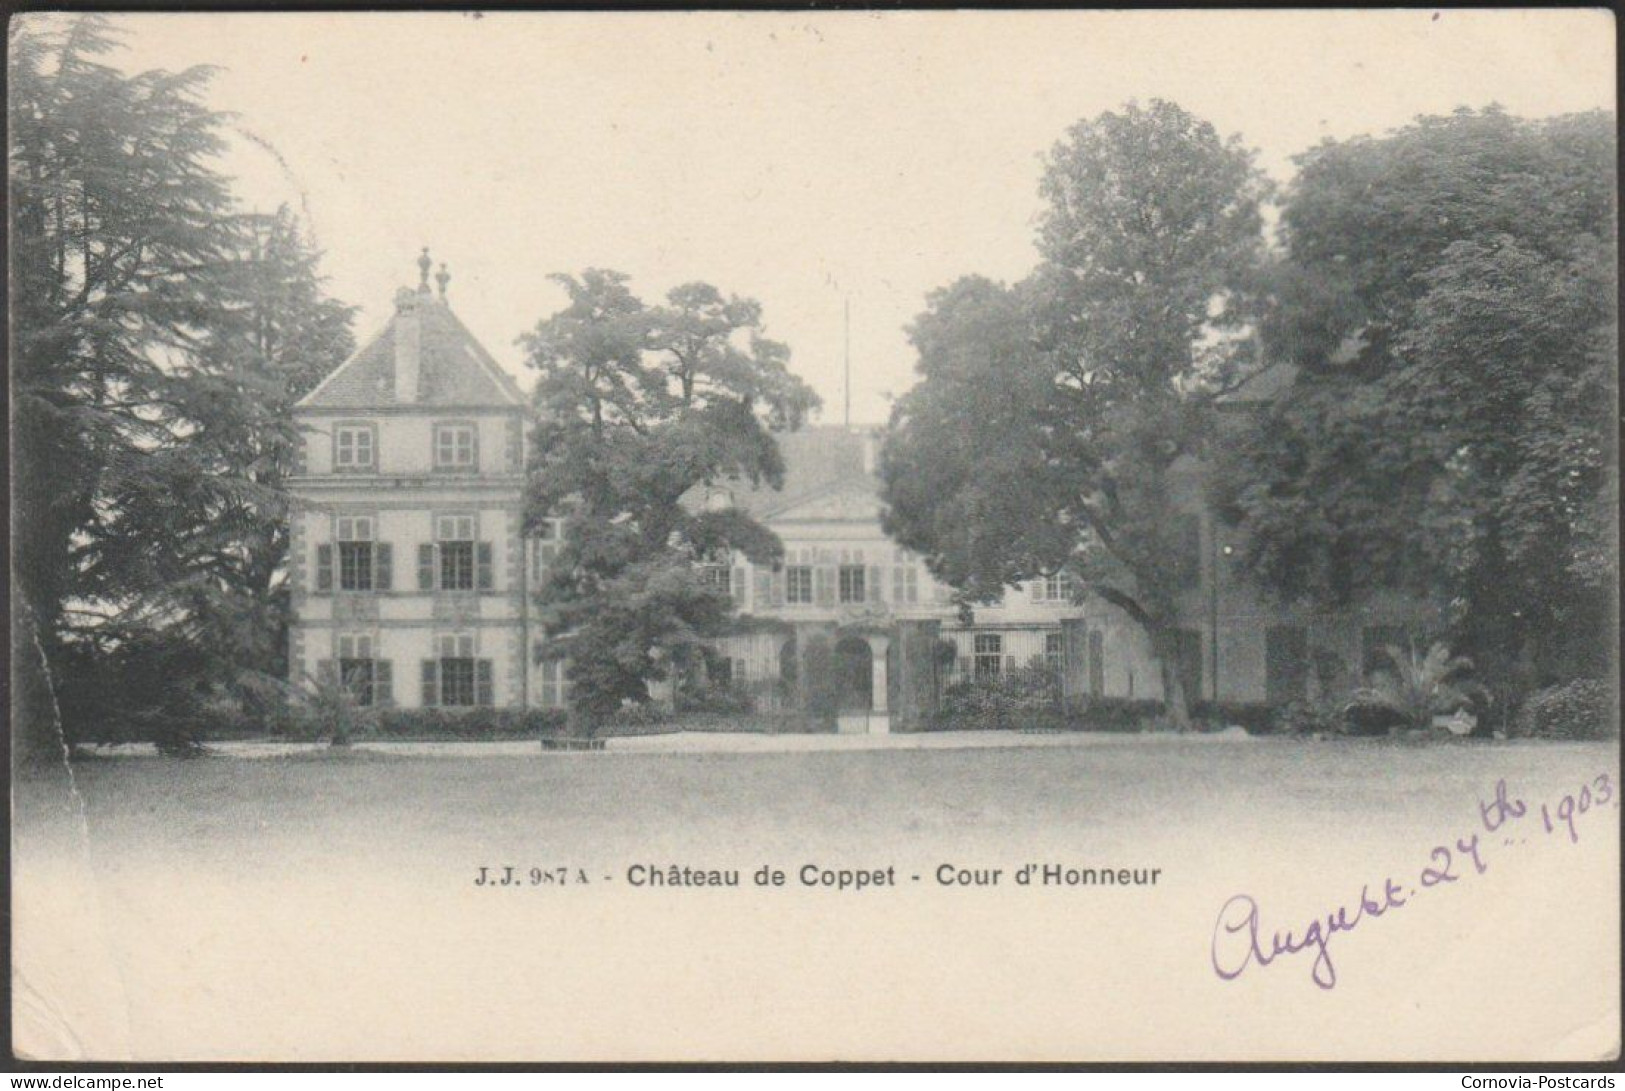 Cour D'Honneur, Château De Coppet, 1903 - Jullien Frères CPA JJ987A - Coppet